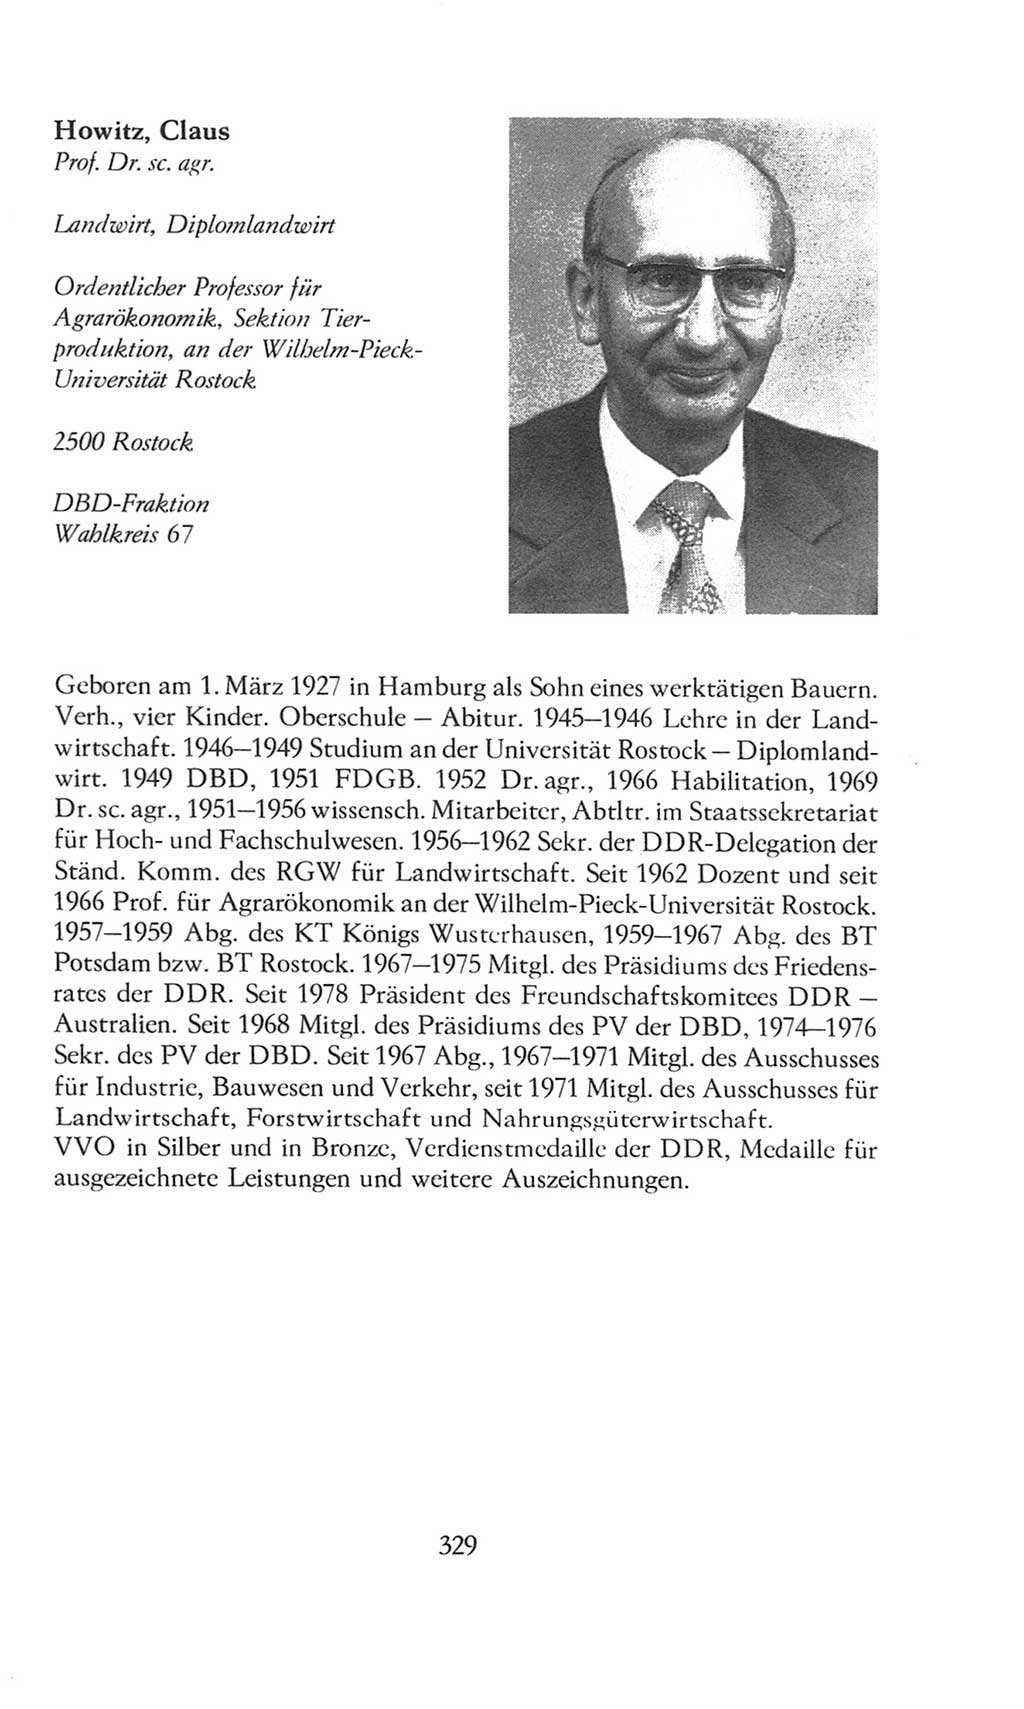 Volkskammer (VK) der Deutschen Demokratischen Republik (DDR), 8. Wahlperiode 1981-1986, Seite 329 (VK. DDR 8. WP. 1981-1986, S. 329)